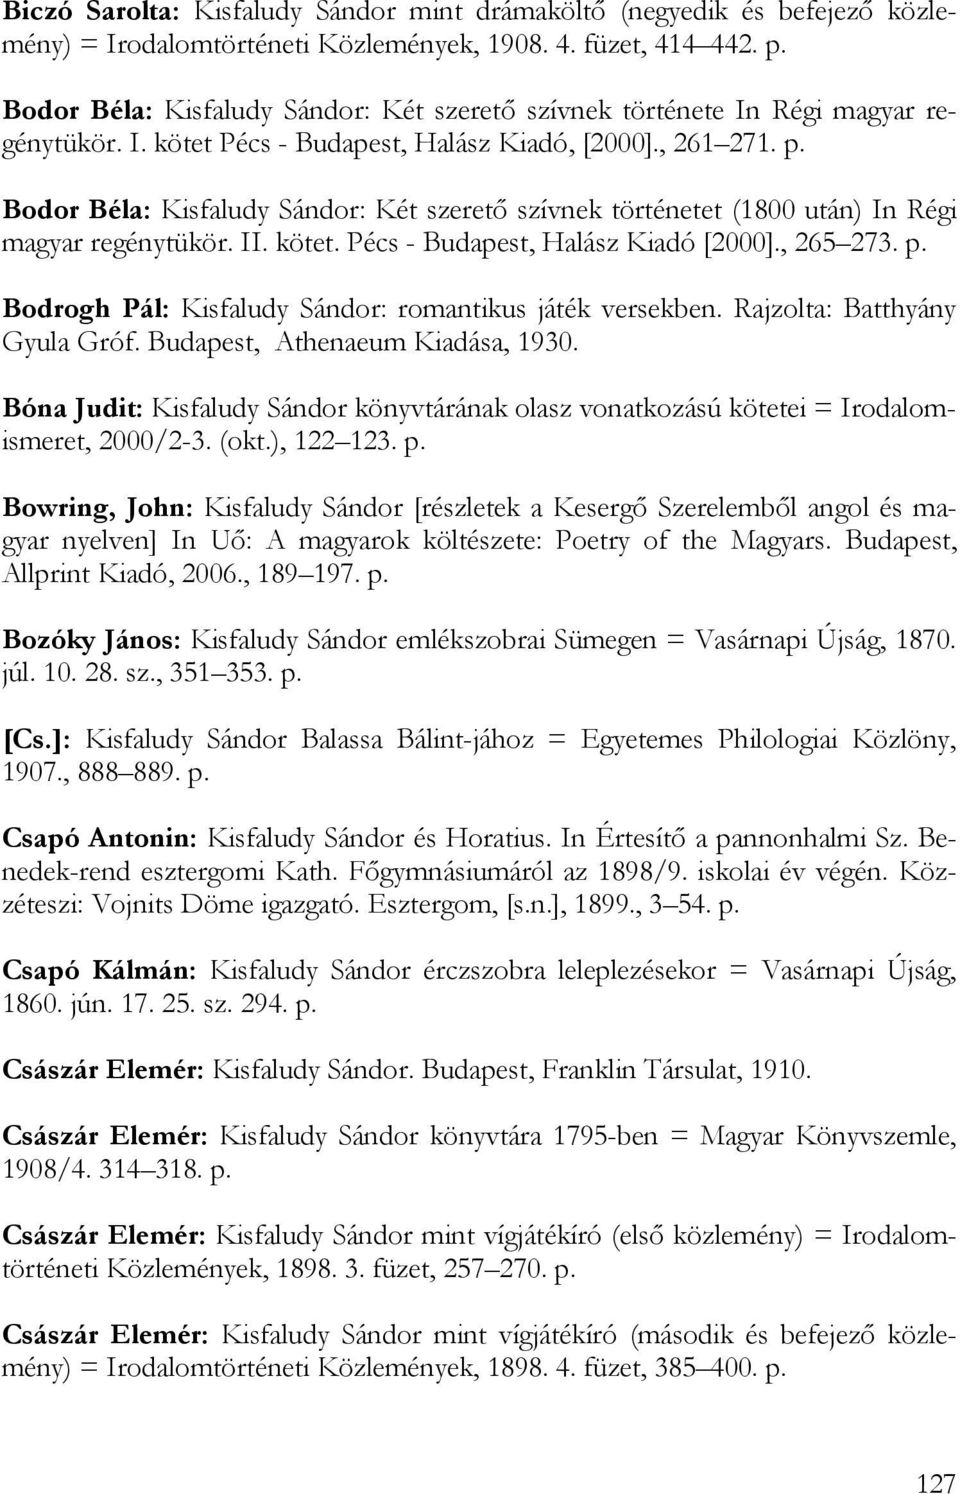 Bodor Béla: Kisfaludy Sándor: Két szerető szívnek történetet (1800 után) In Régi magyar regénytükör. II. kötet. Pécs - Budapest, Halász Kiadó [2000]., 265 273. p.